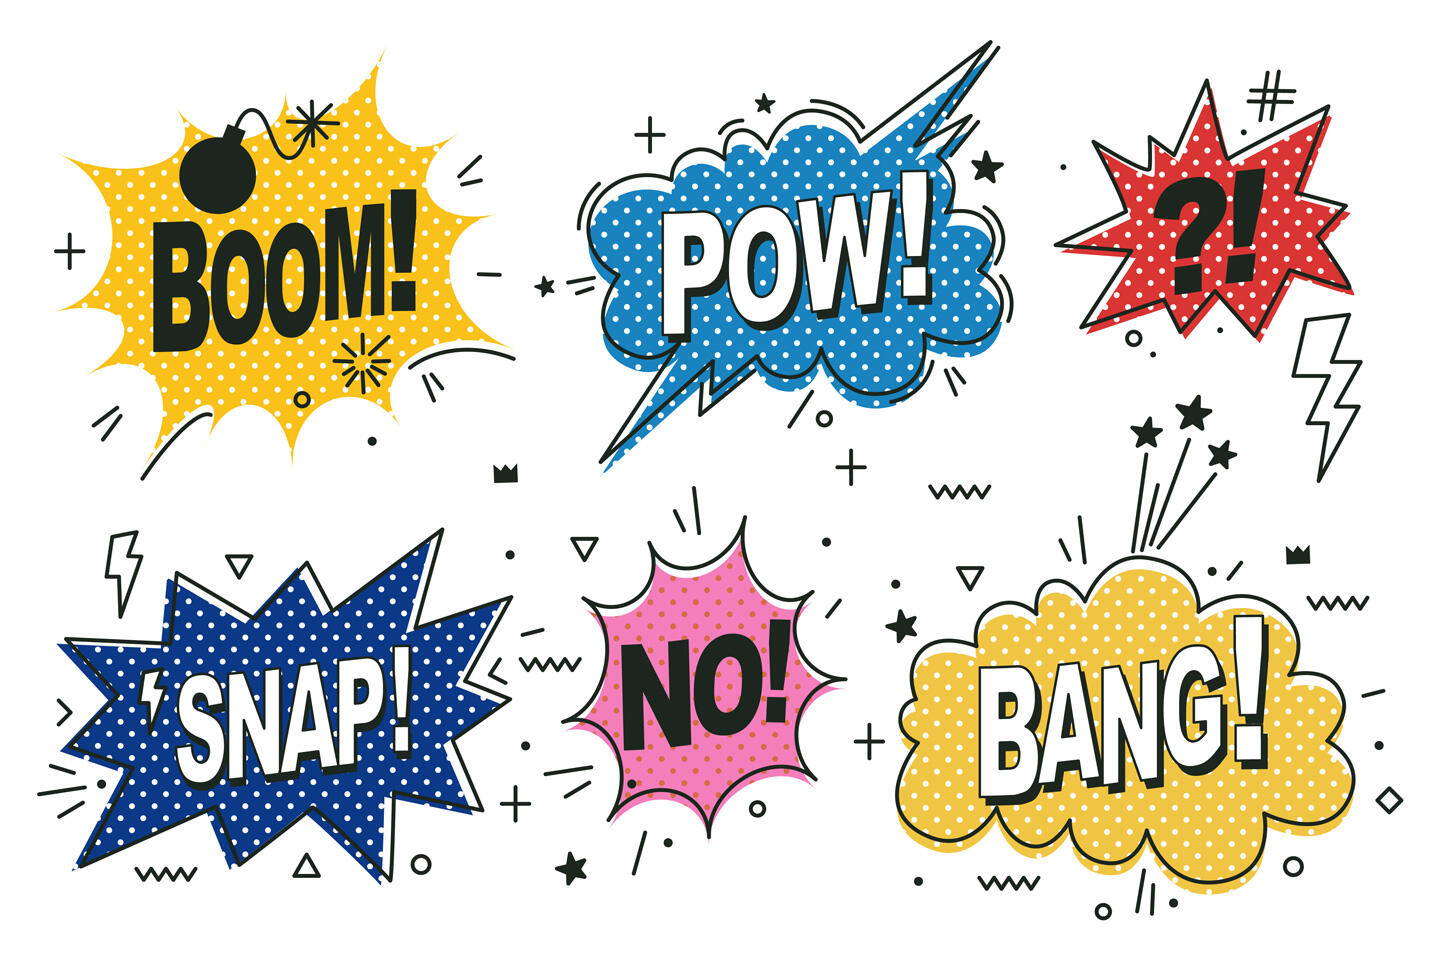 Varias burbujas de diálogo de estilo cómic con palabras como "BOOM!", "POW!", "SNAP!", "NO!" y "BANG!" en colores vivos y patrones de puntos, estrellas y rayos, transmitiendo la energía y el dinamismo de los cómics.